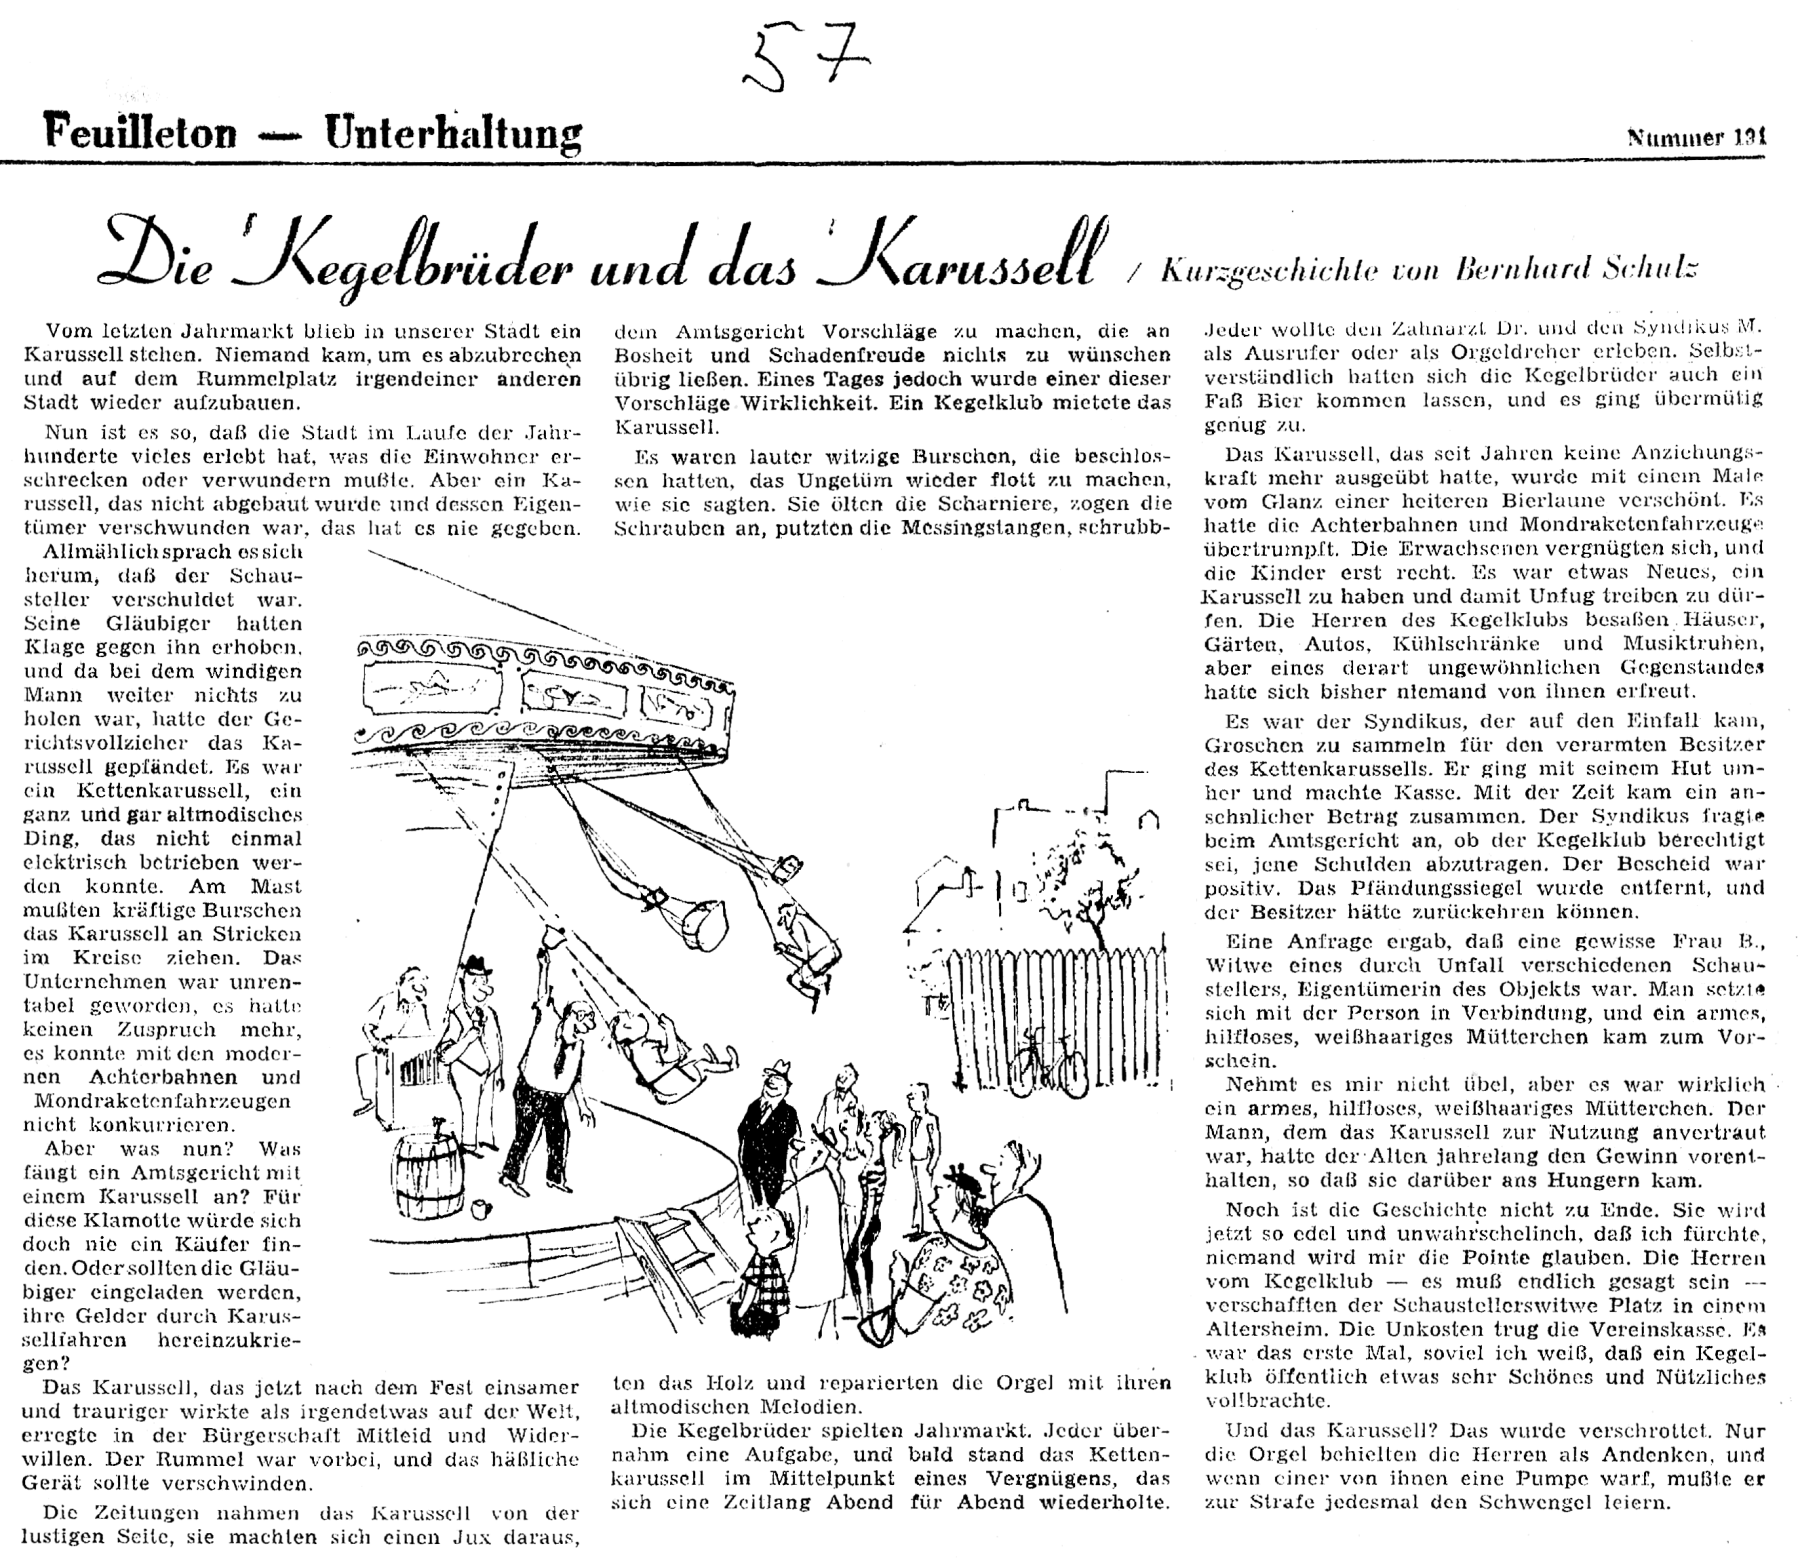 1957 Die Kegelbrüder und das Karussell